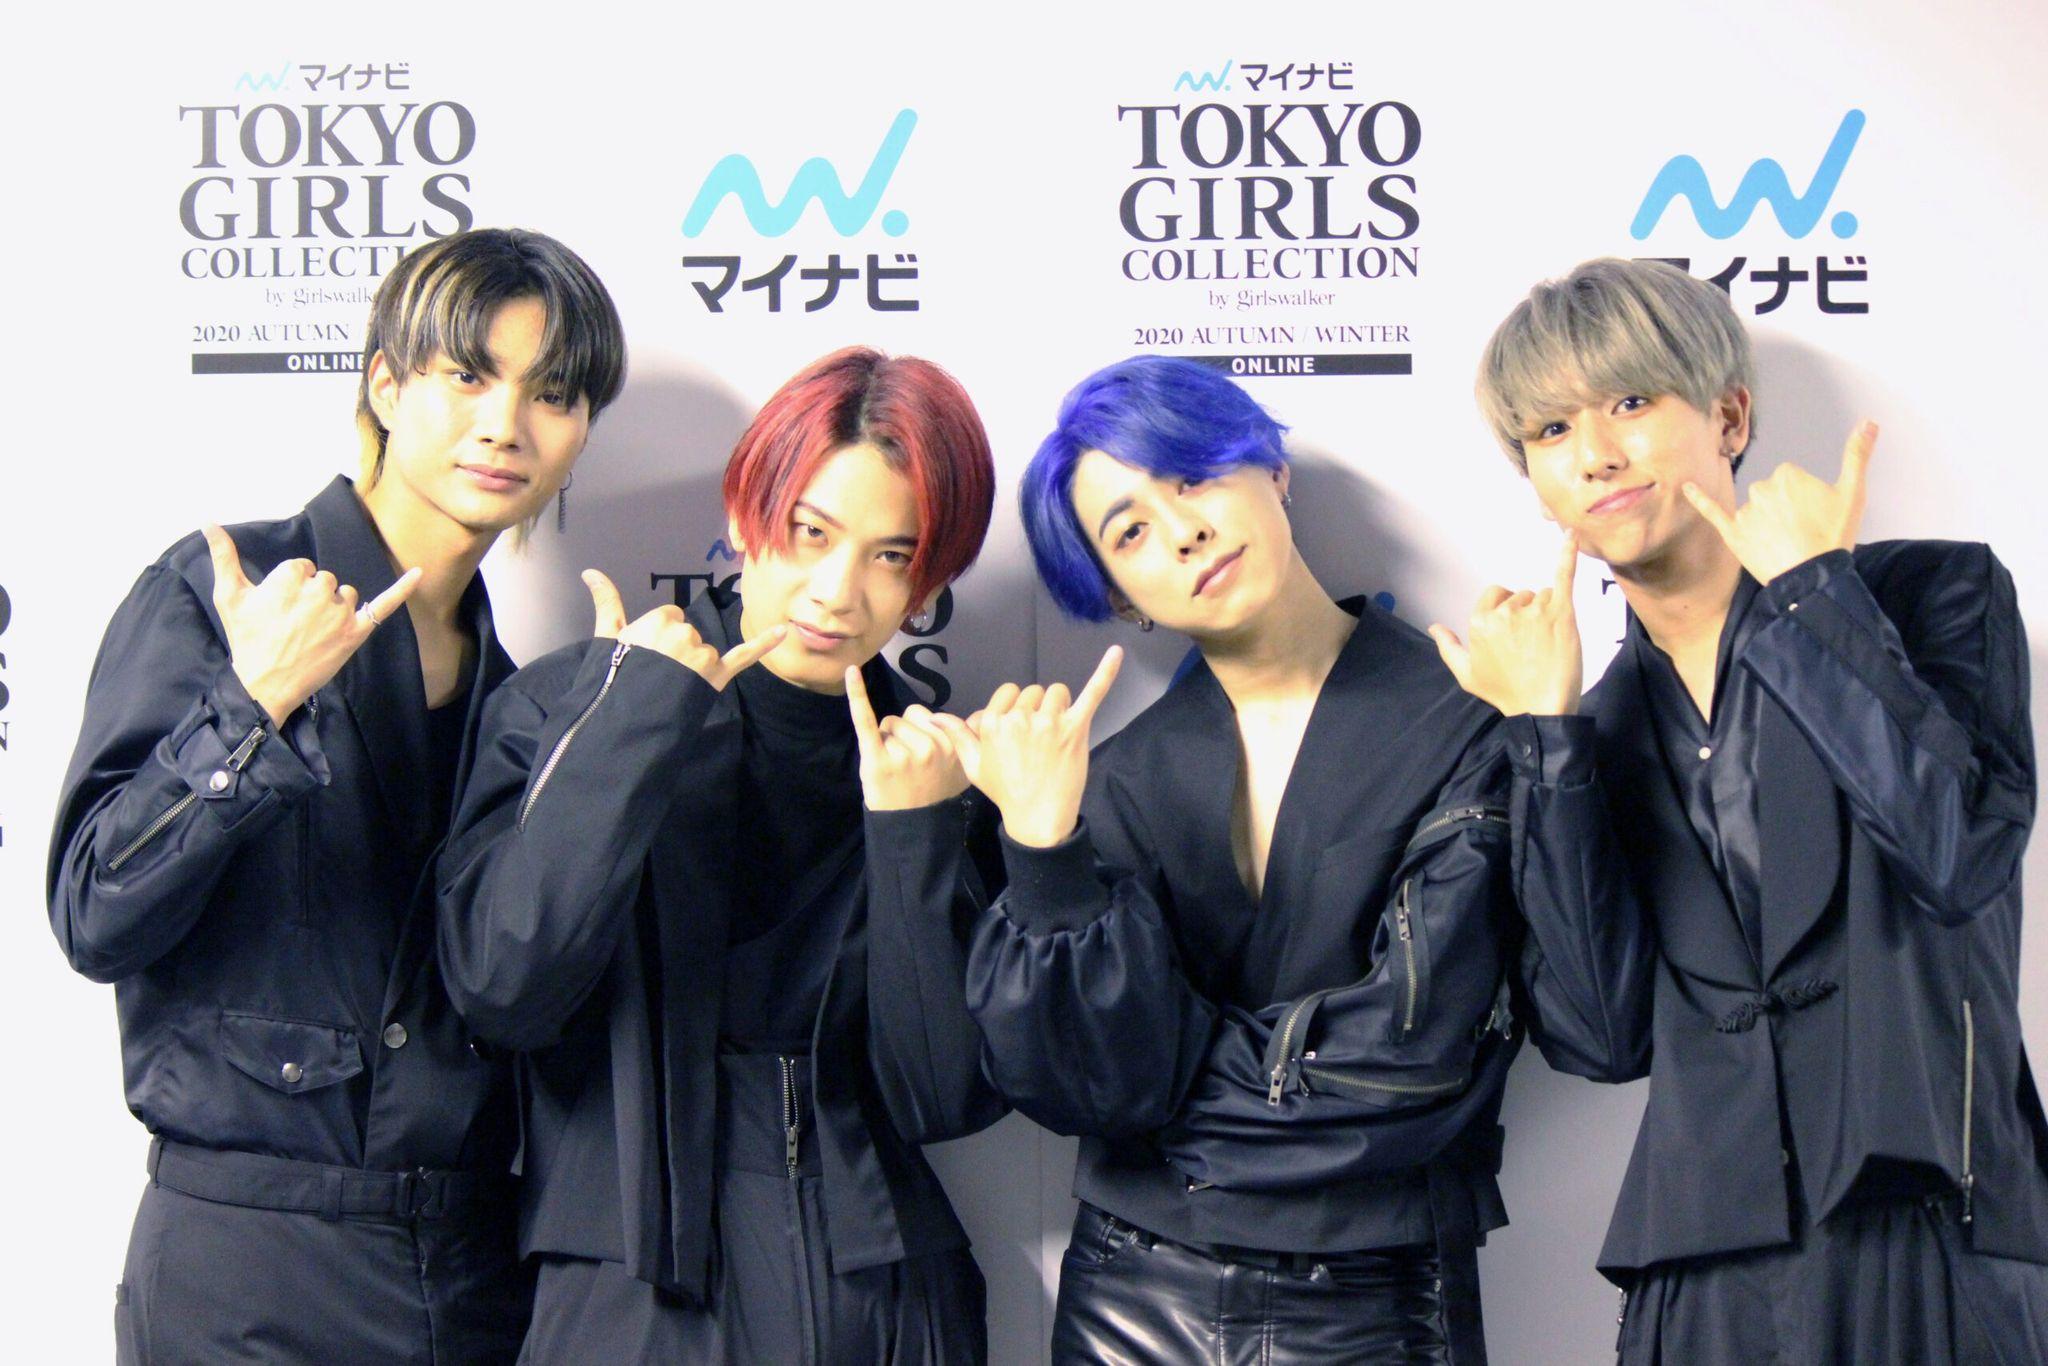 ボーイズグループOWV「目標は武道館」デビューに弾みをつけるTGCステージ大成功！